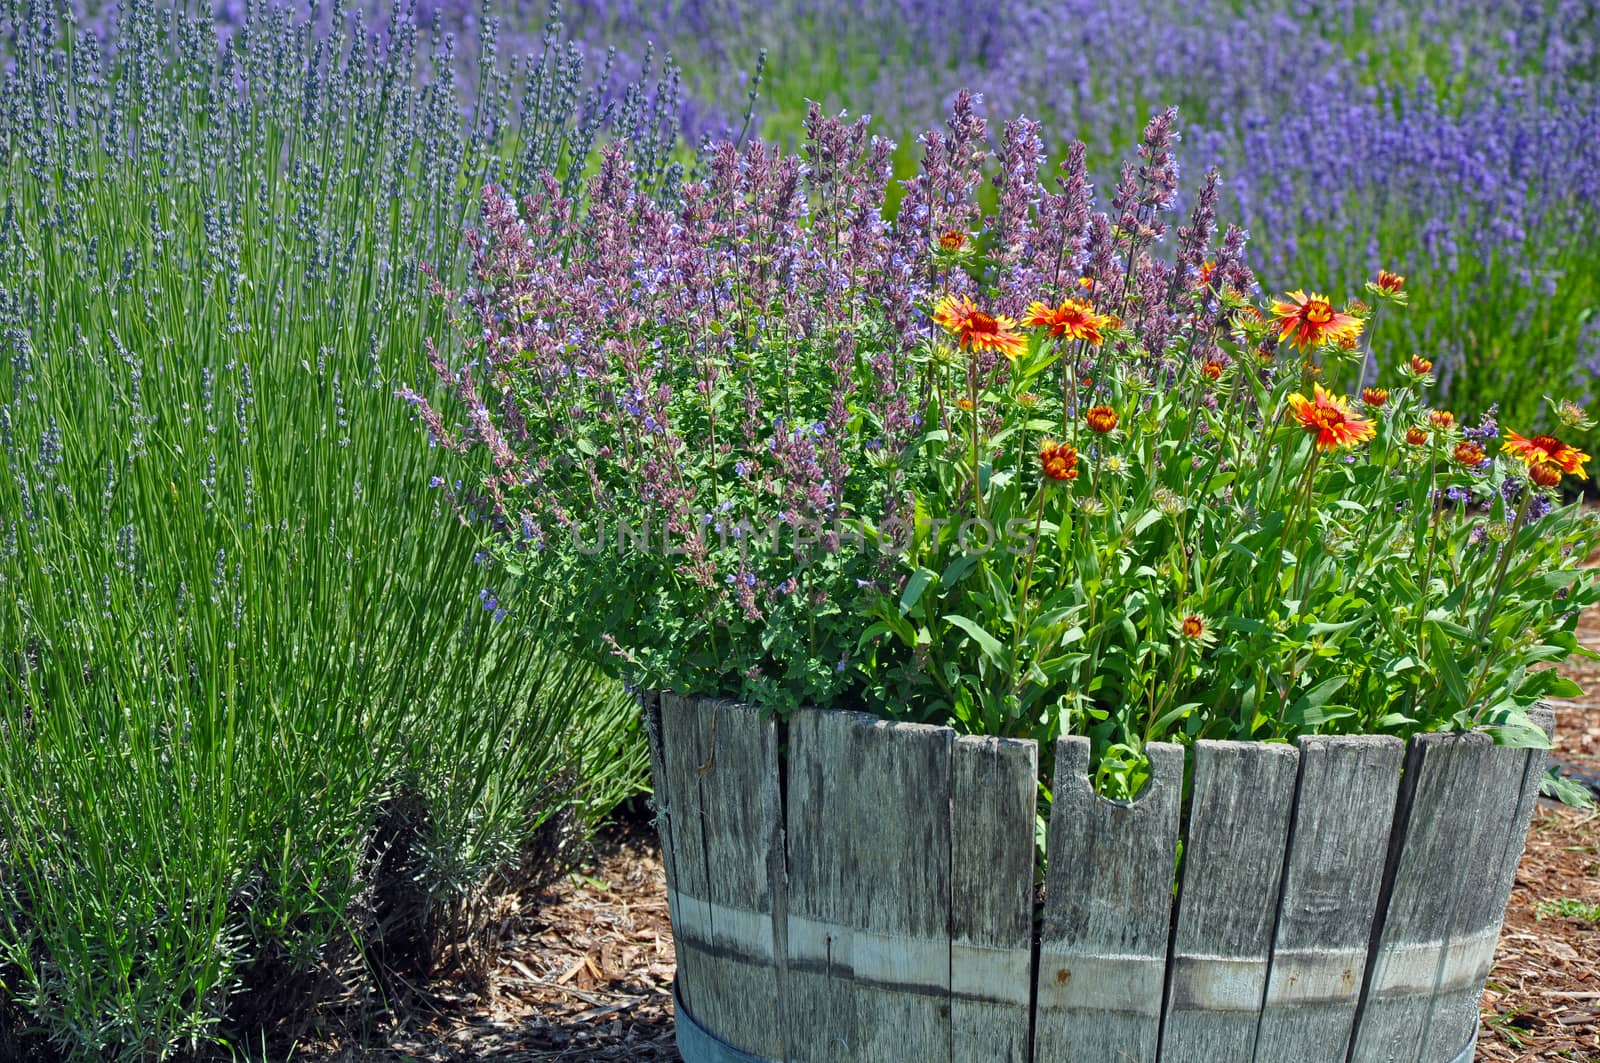 Old wooden barrel planter in lavender garden